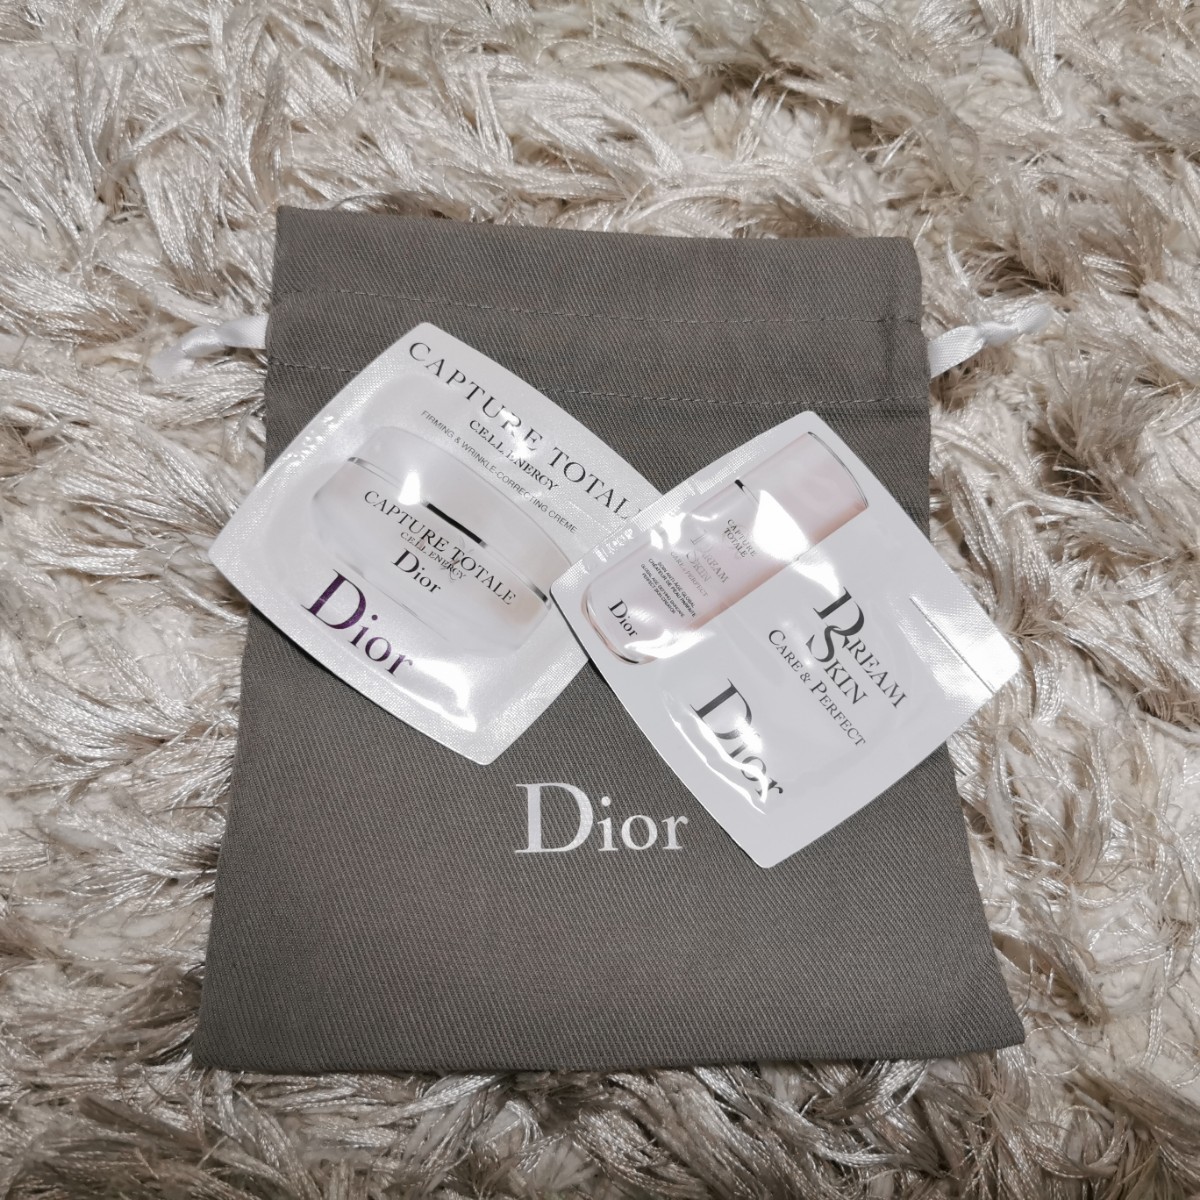 Dior　アディクトリップマキシマイザー&サンプル&ギフト梱包セット